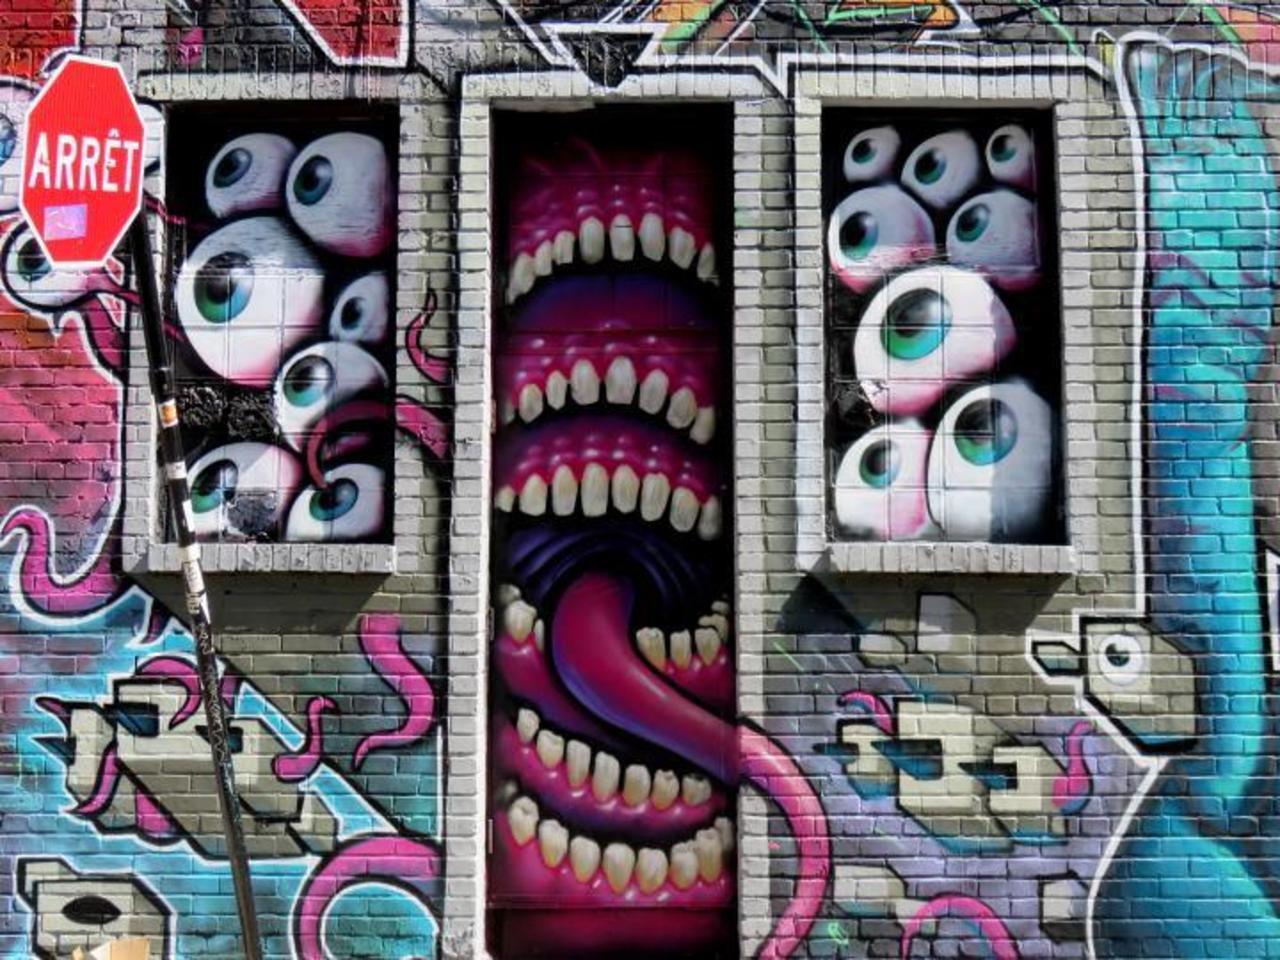 Monster House in Montreal #streetart #graffiti #montreal #art #funky #dope . : http://t.co/OgZstgVk2X